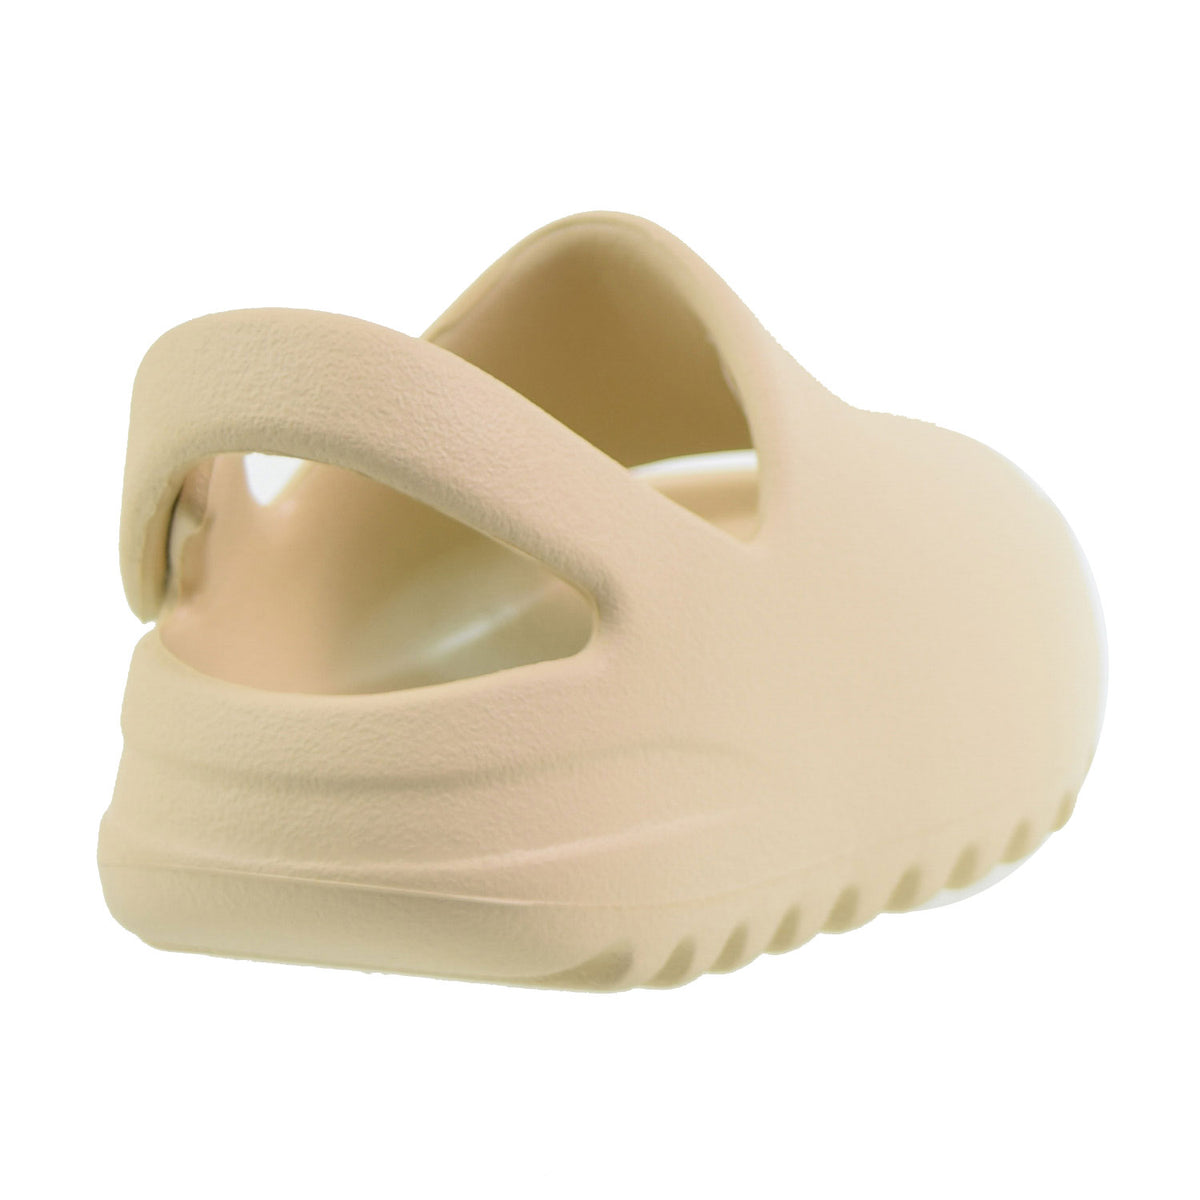 Adidas Yeezy Slide Infant